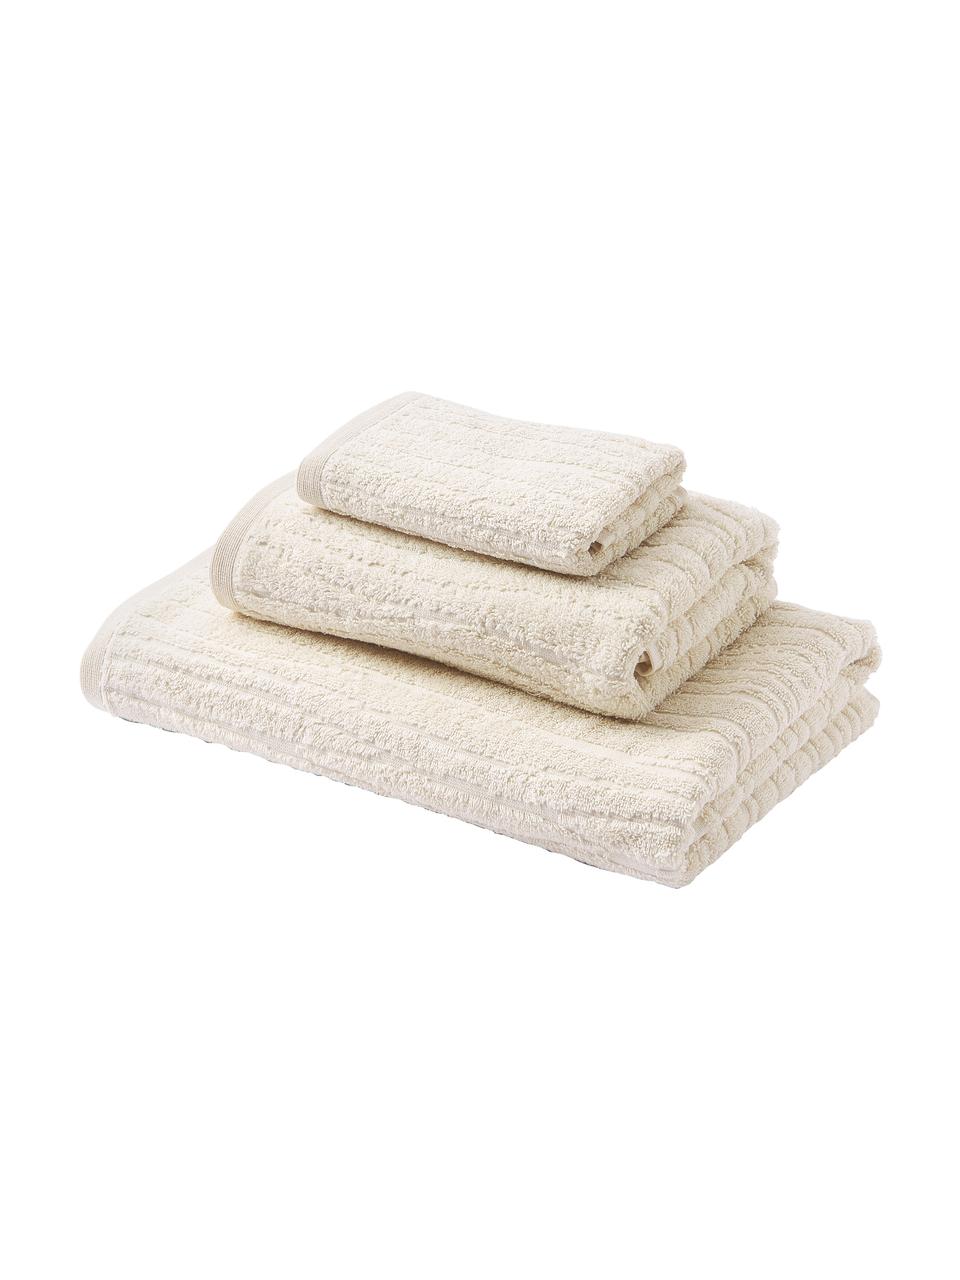 Komplet ręczników z bawełny Audrina, 3 elem., Beżowy, Komplet z różnymi rozmiarami